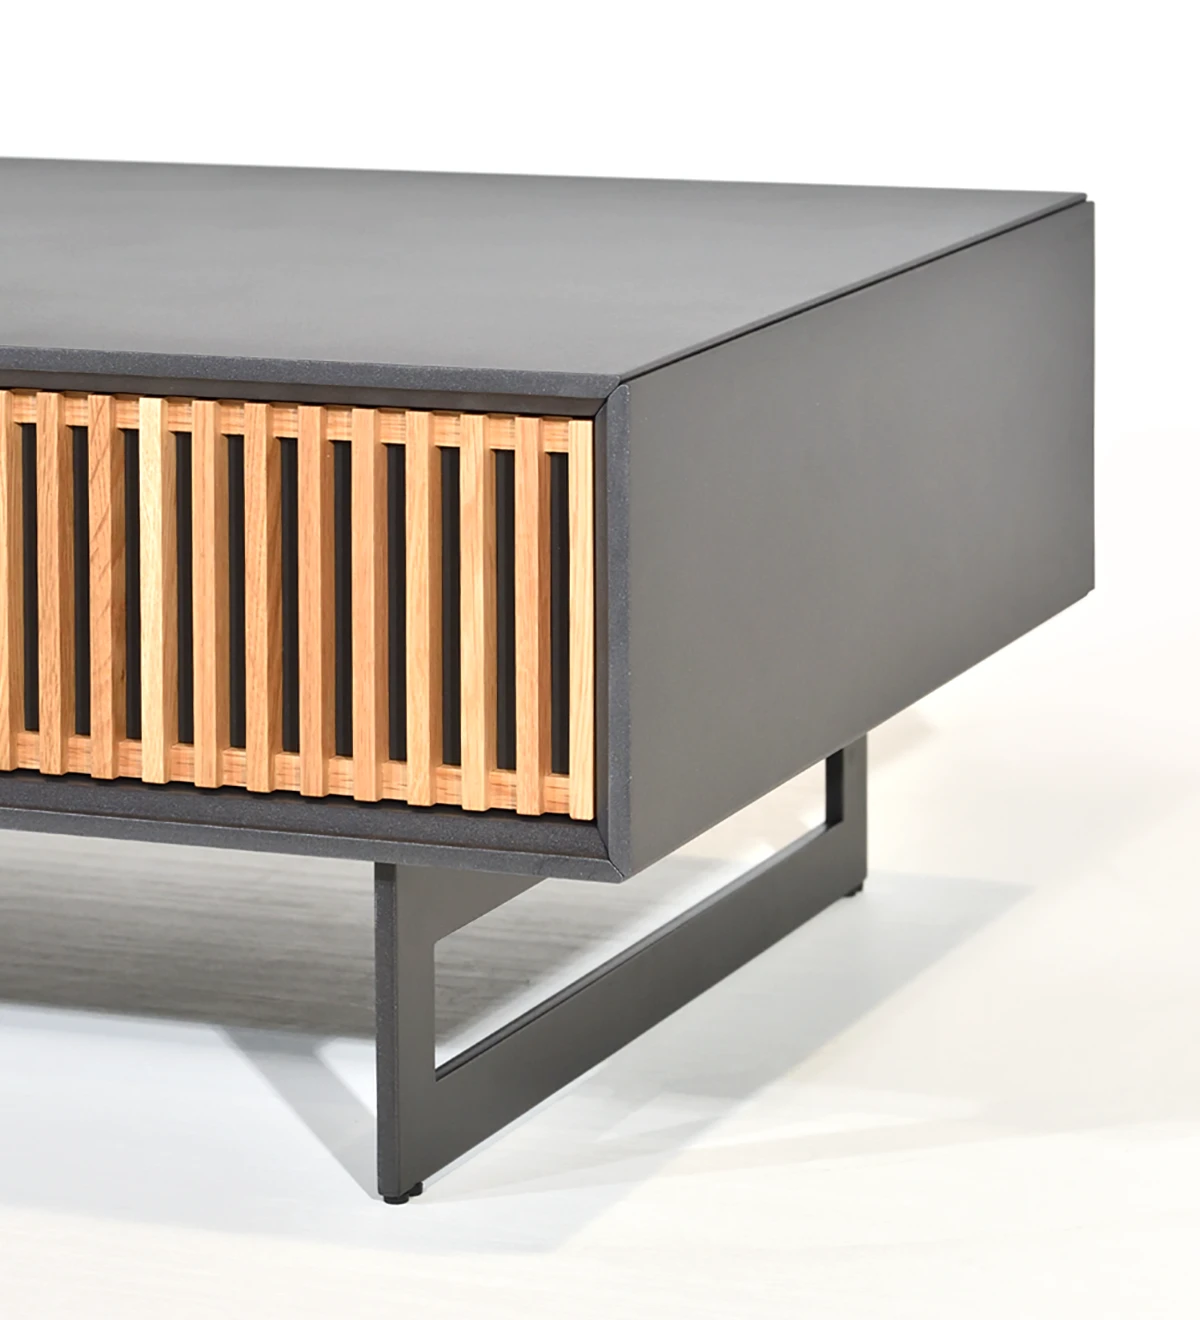 Mesa de centro rectangular con 1 cajón de roble natural, estructura lacada perla y pies de metal lacado negro metalizado.